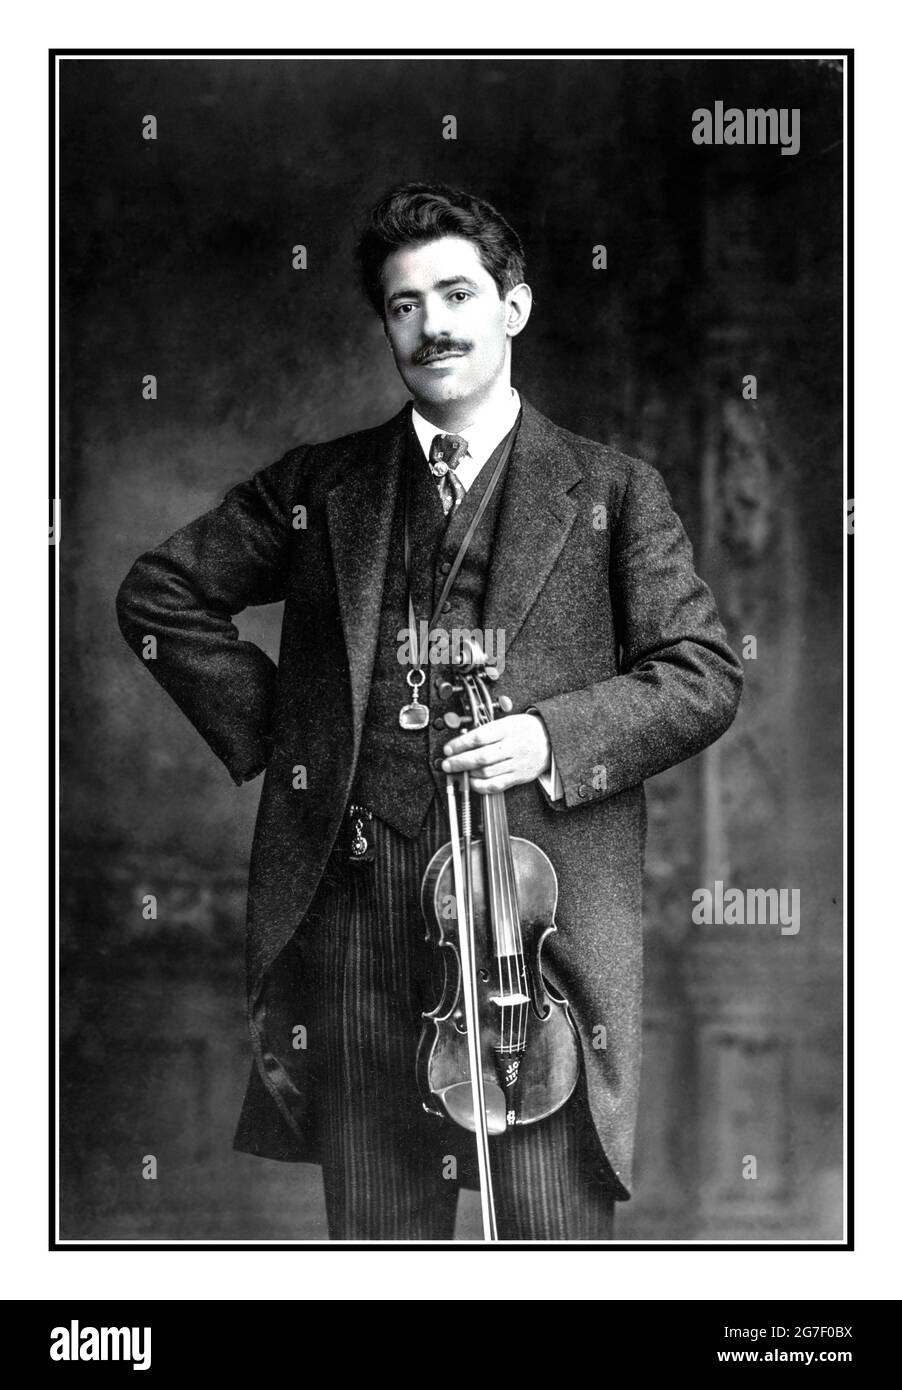 Fritz Kreisler violoniste, portrait de trois quarts de longueur, debout, en face de la tenue du violon et de l'arc Date de création/publication : c1913. Kreisler, Fritz, 1875-1962 Fritz Kreisler (2 février 1875 – 29 janvier 1962) est un violoniste et compositeur américain d'origine autrichienne. L'un des maîtres de violon les plus connus de son époque, considéré comme l'un des plus grands violonistes de tous les temps, il était connu pour son ton doux et son expression. Comme beaucoup de grands violonistes de sa génération, il a produit un son caractéristique qui était immédiatement reconnaissable comme le sien. Banque D'Images